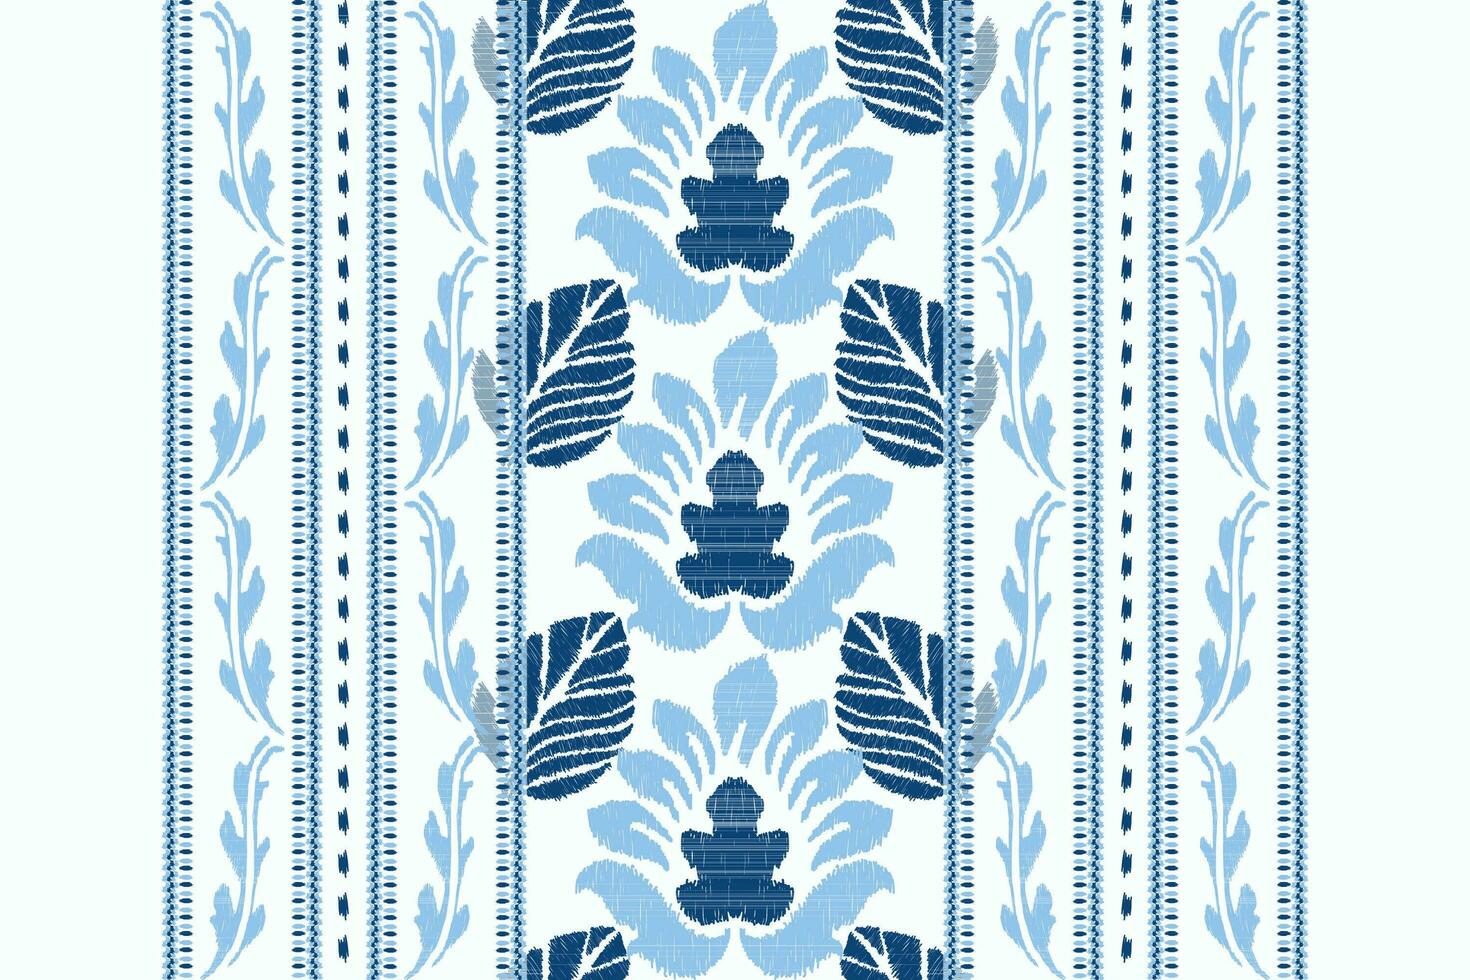 ikat bloemen paisley borduurwerk.blauw en wit achtergrond.ikat etnisch oosters patroon traditioneel.azteken stijl abstract vector illustratie.ontwerp voor textuur, stof, kleding, verpakking, decoratie, sjaal.